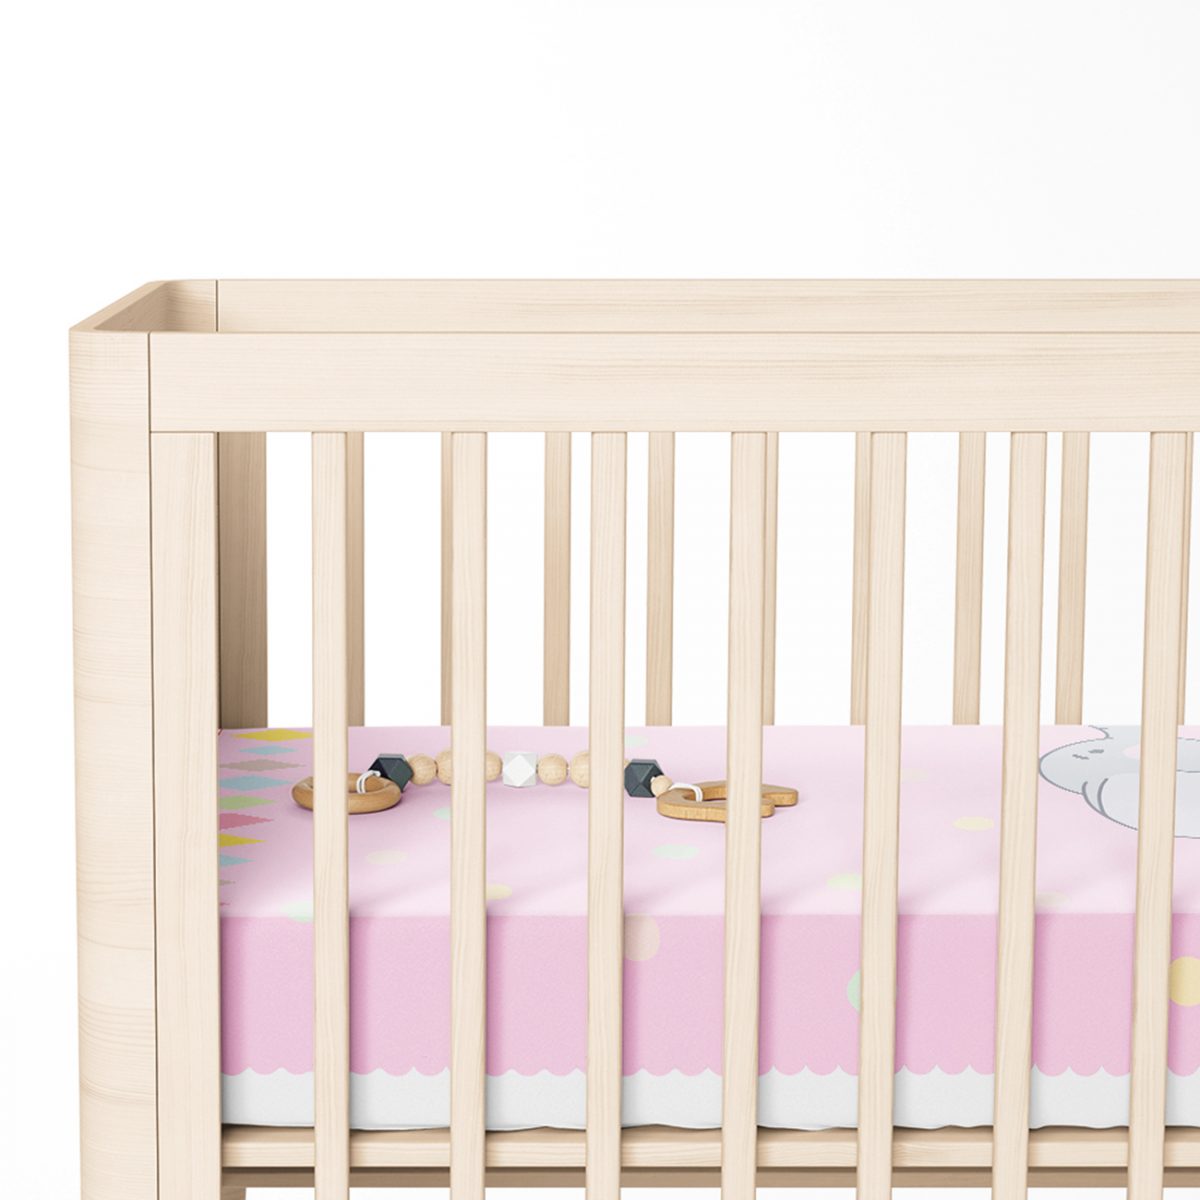 Sevimli Fil Baby Shower Tasarımlı Çocuk Odası Yatak Örtüsü Realhomes